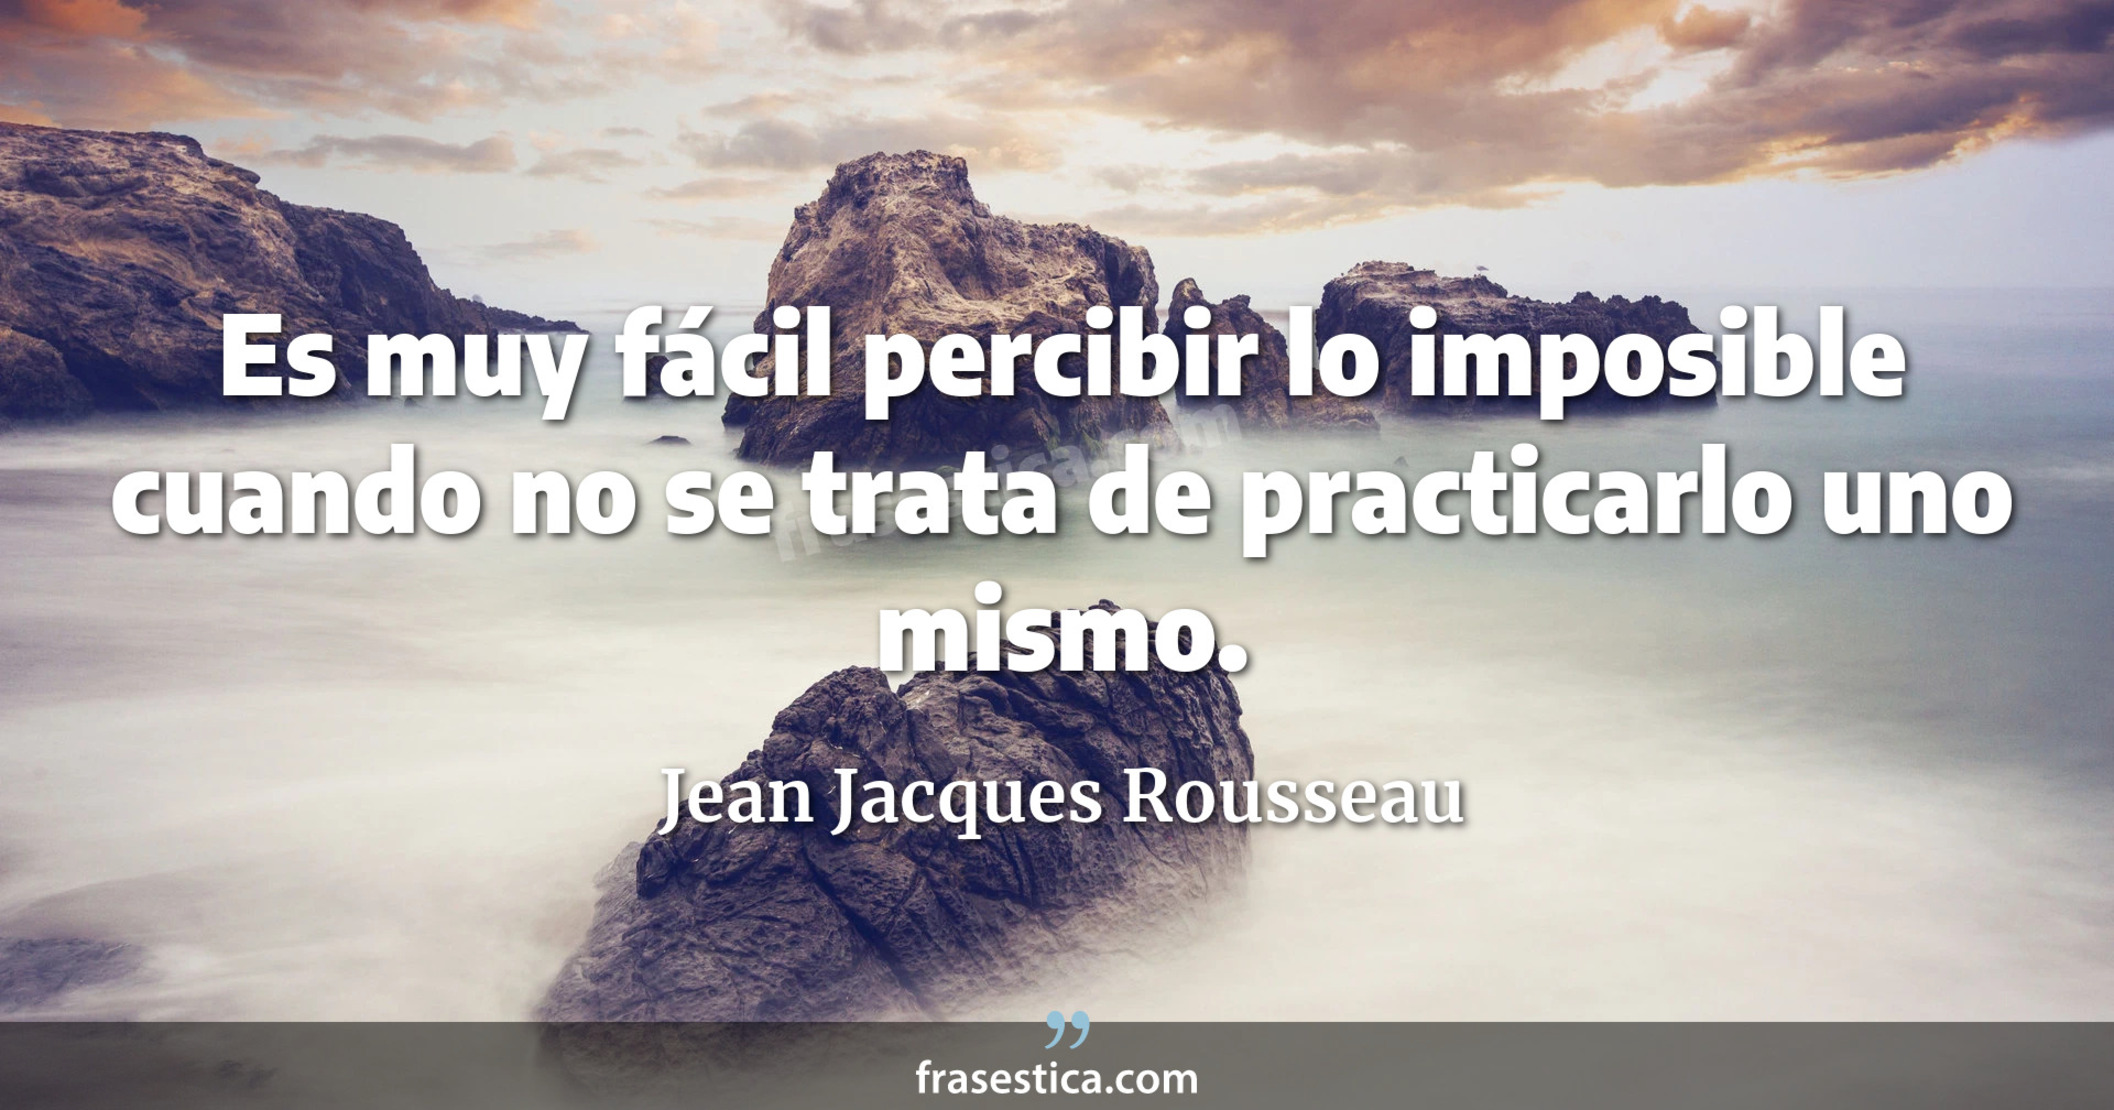 Es muy fácil percibir lo imposible cuando no se trata de practicarlo uno mismo. - Jean Jacques Rousseau